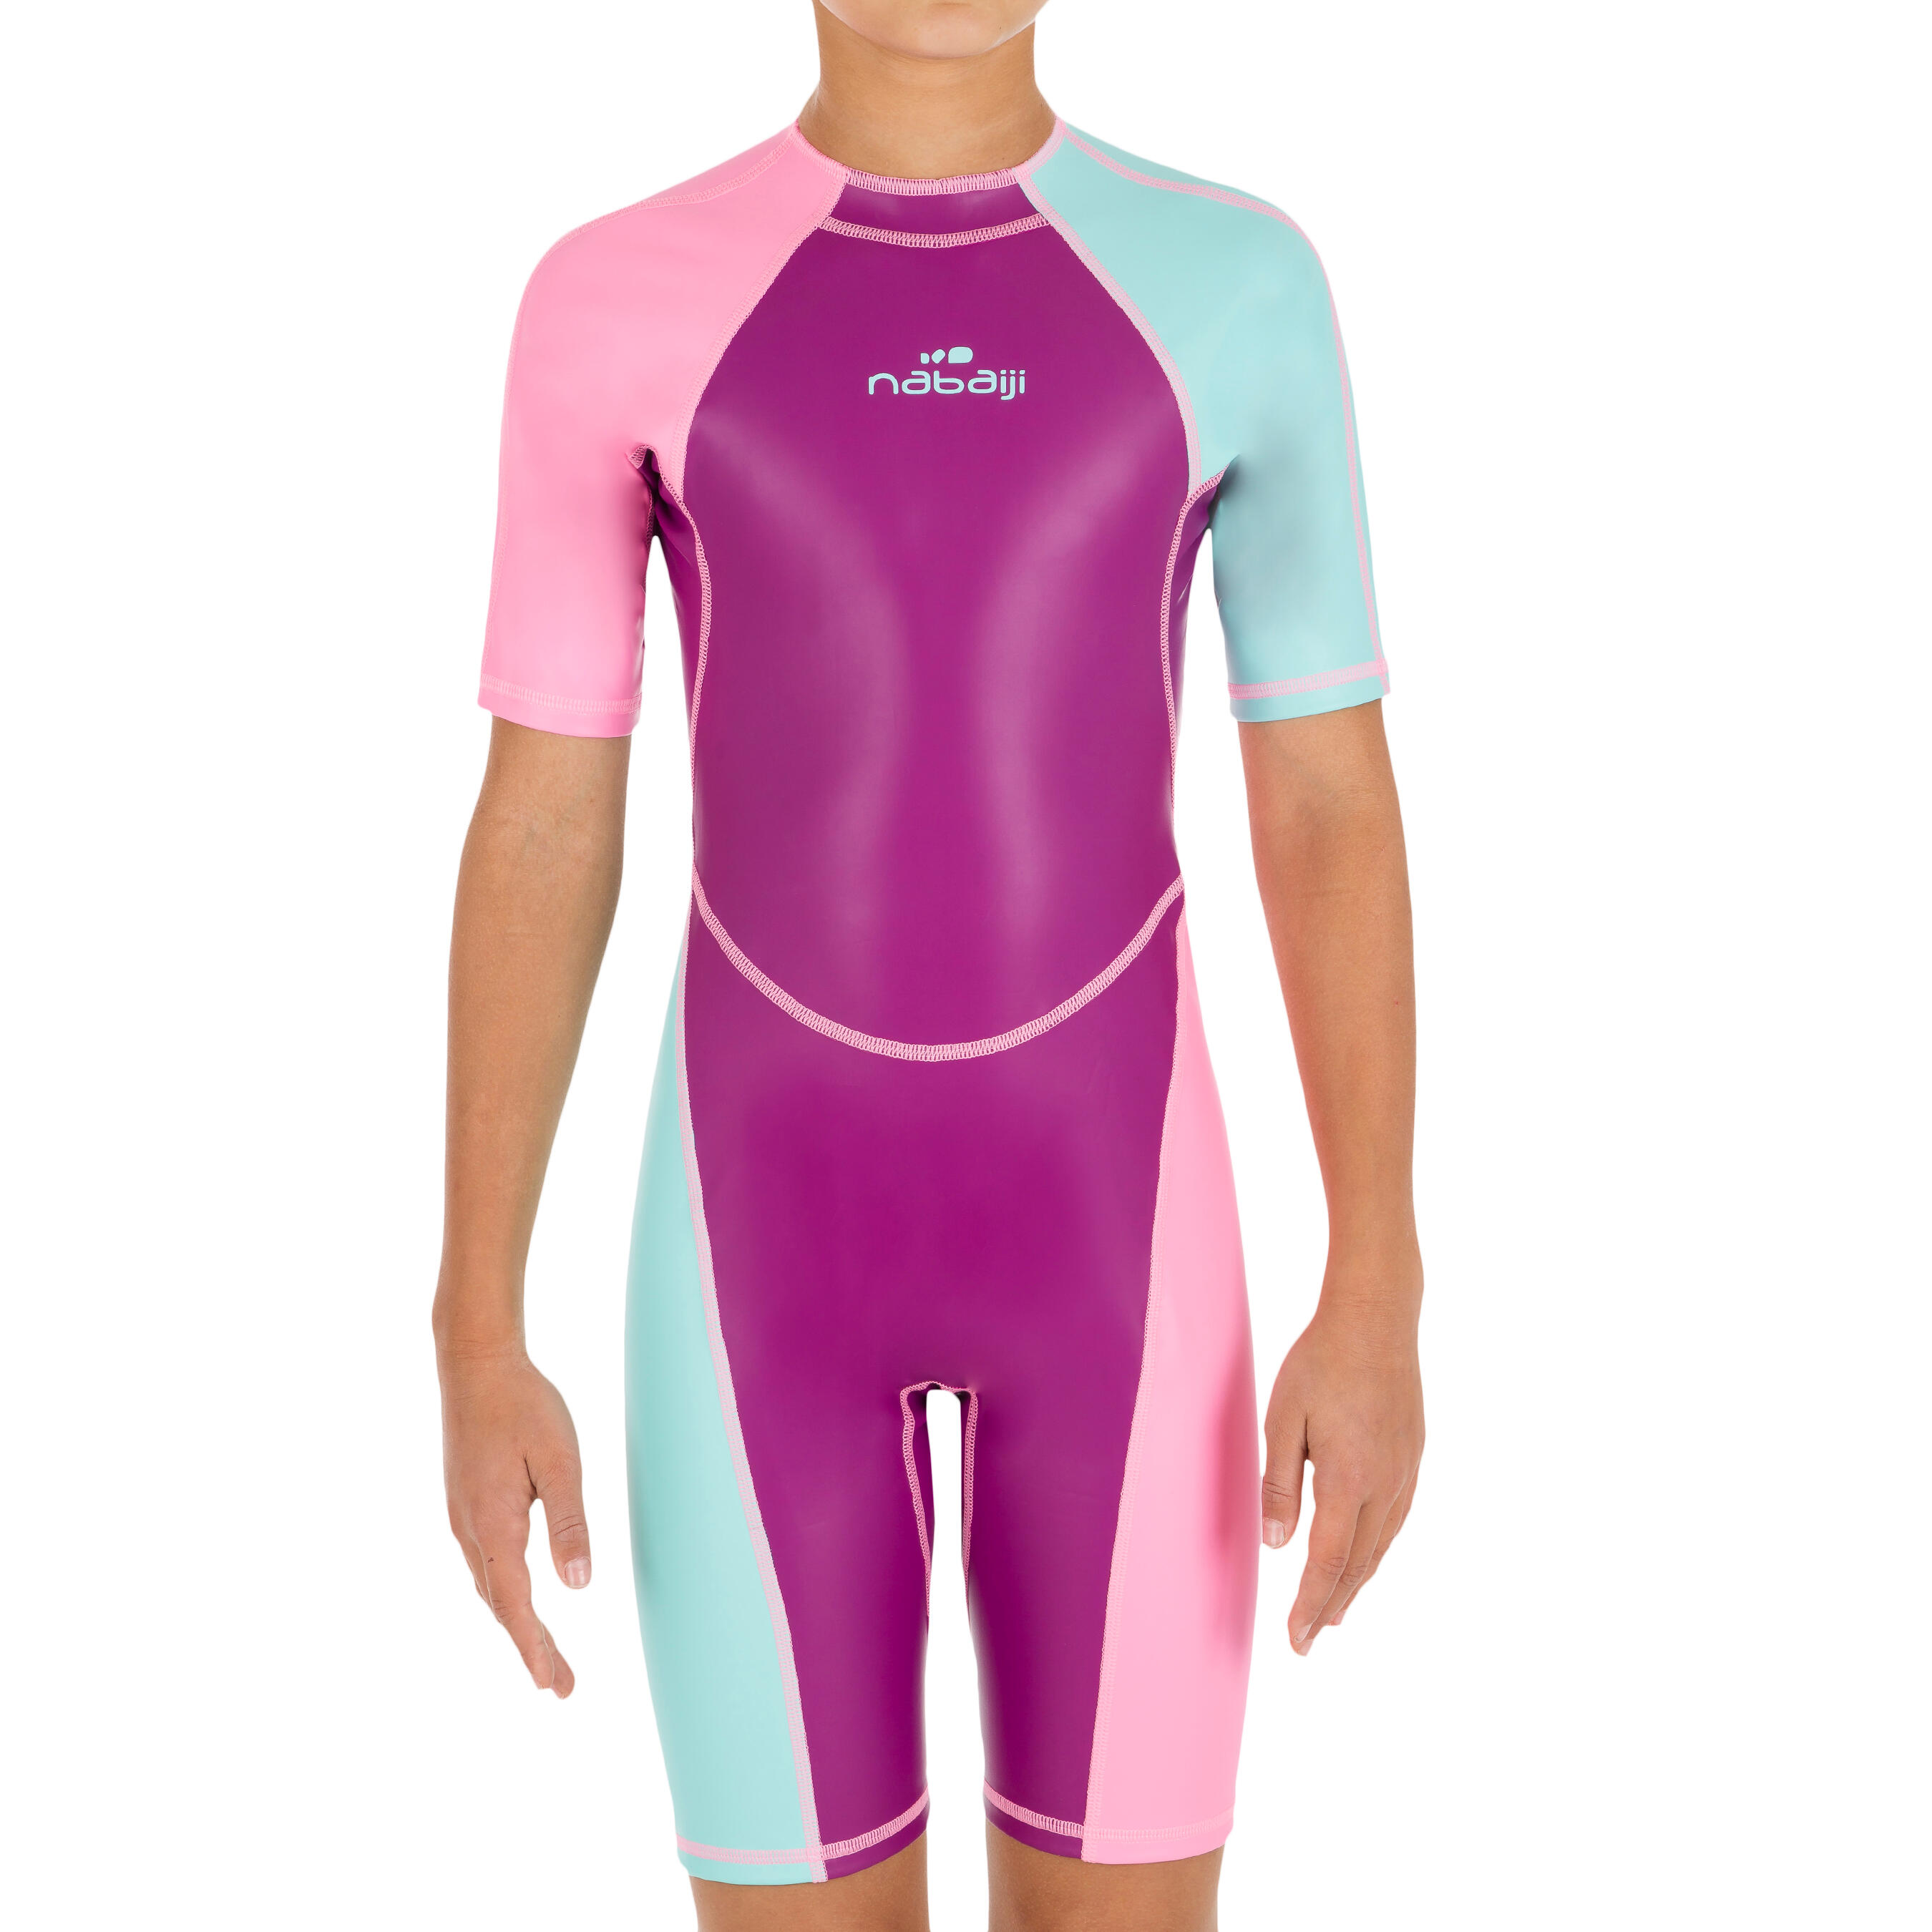 decathlon girls swimming costume